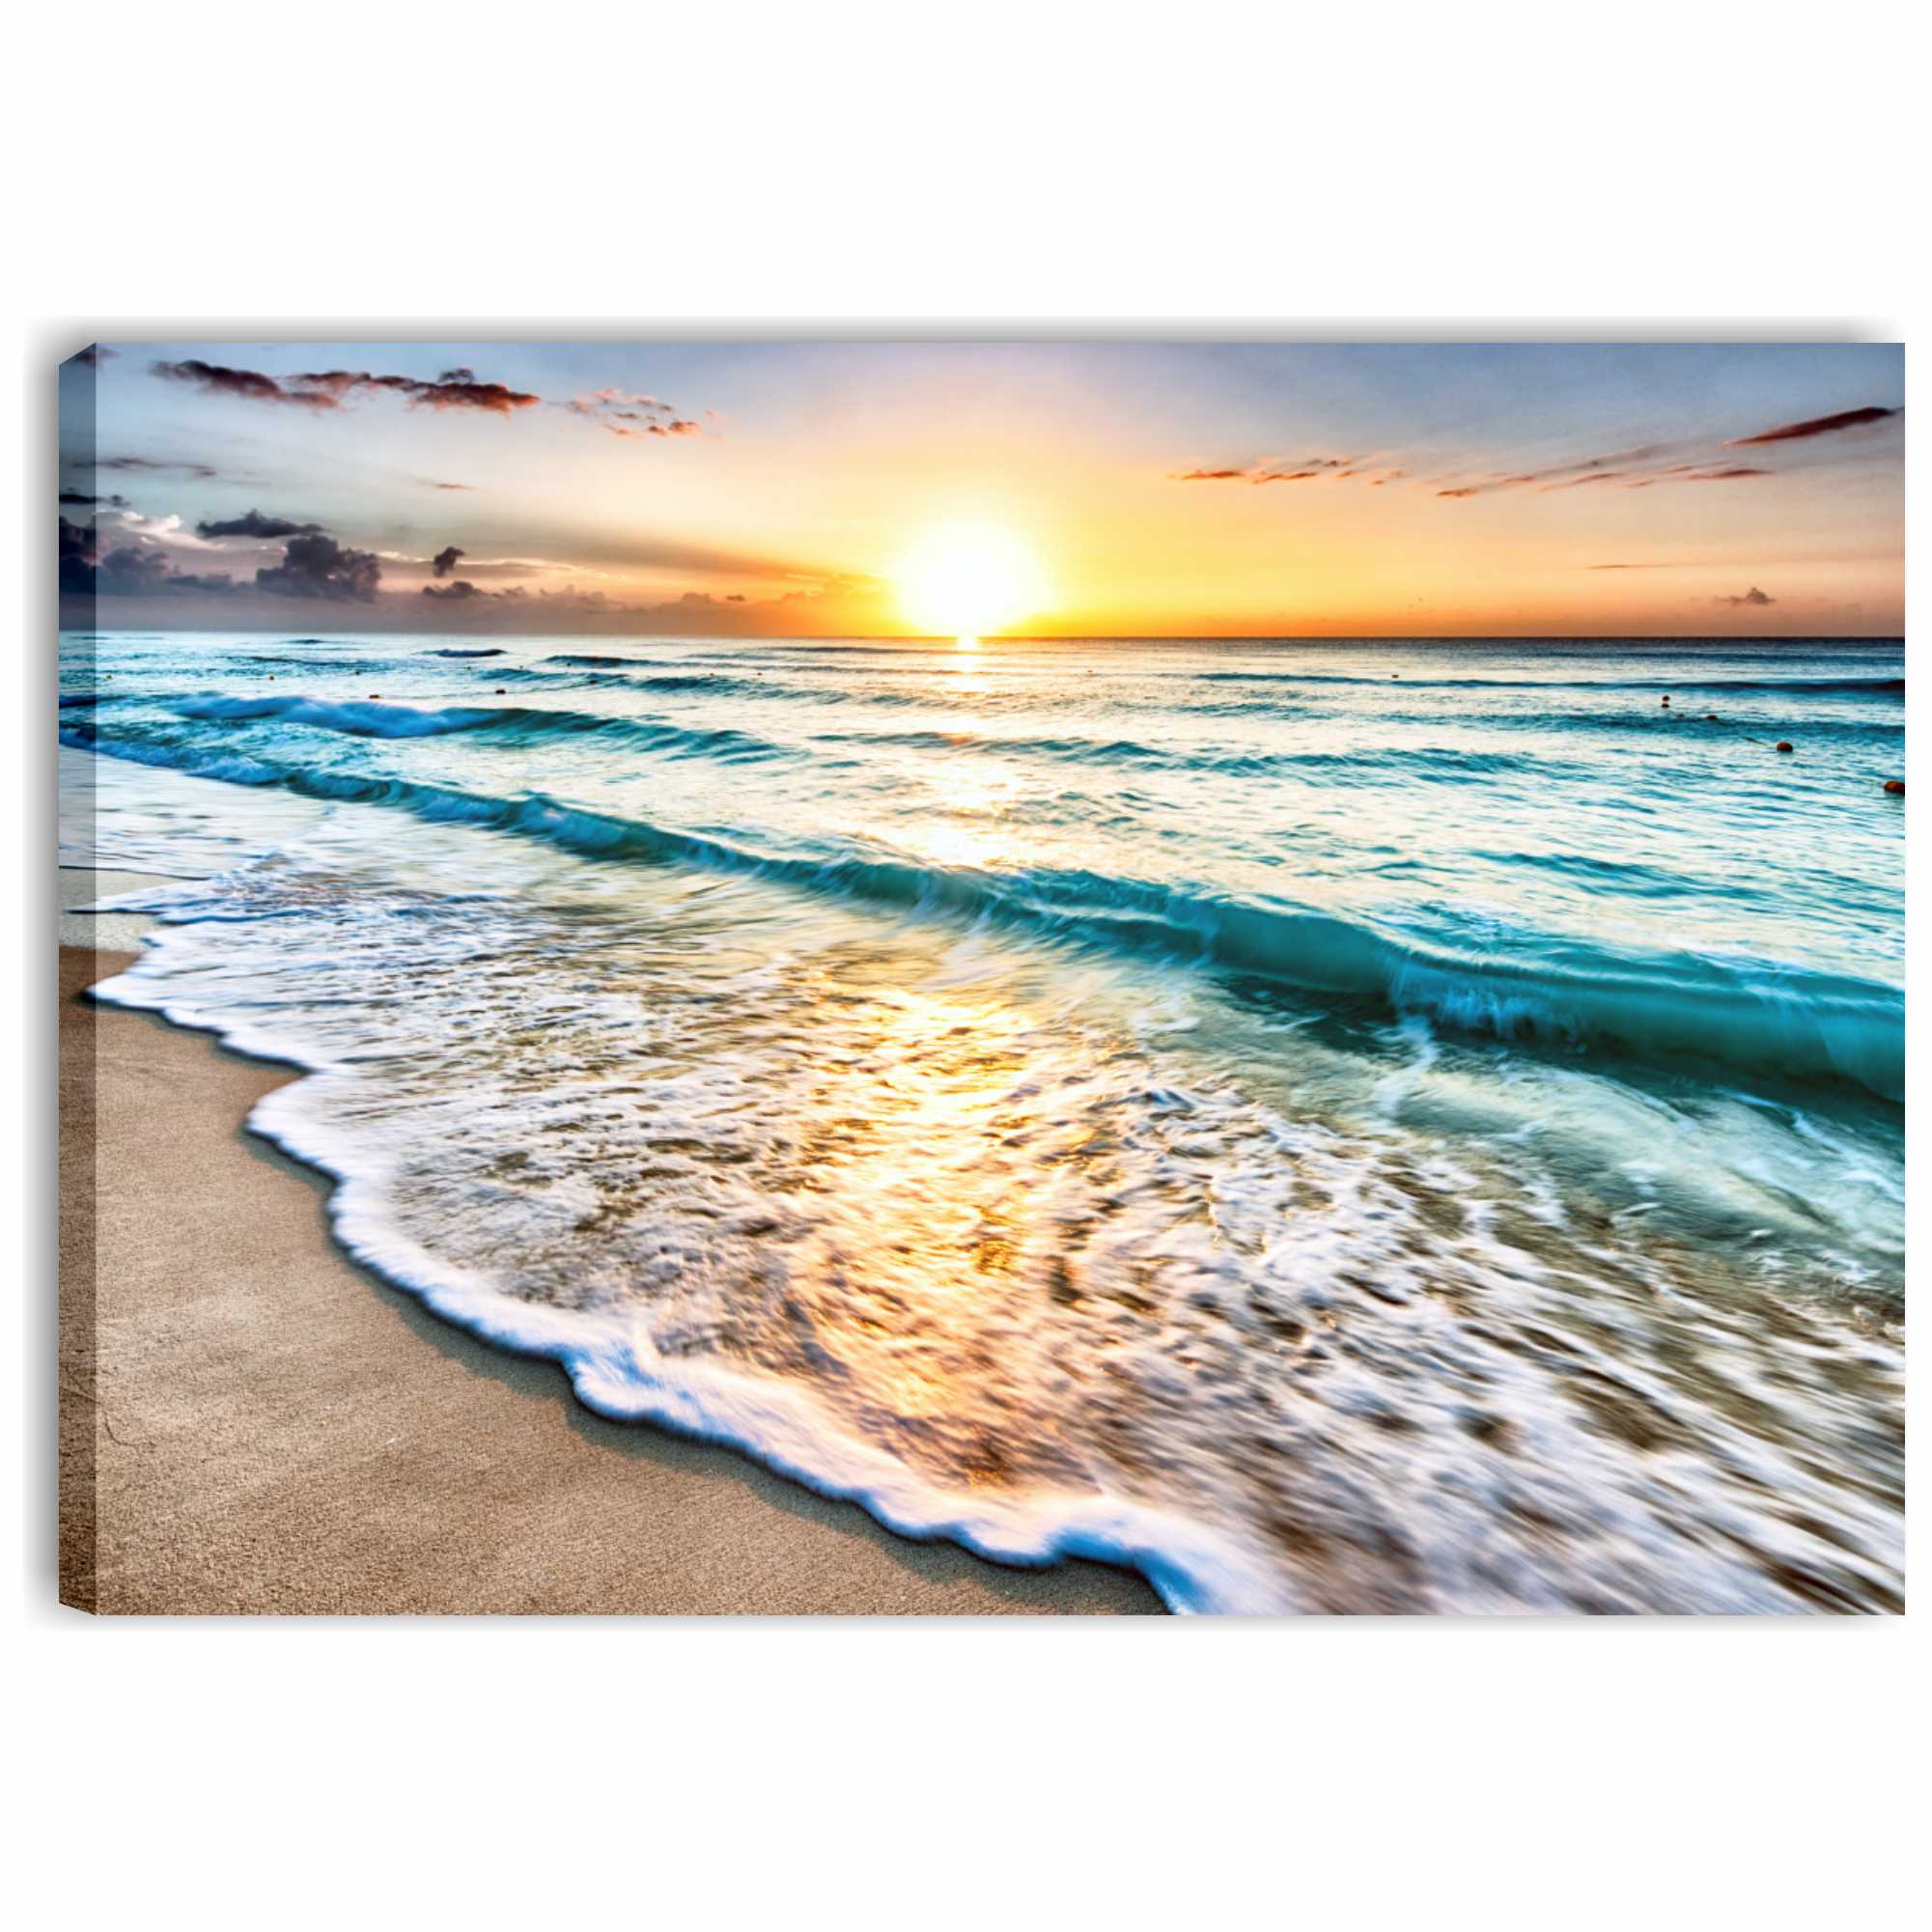 Mare tramonto 2 - quadro moderno stampa su tela 100 x 70 con